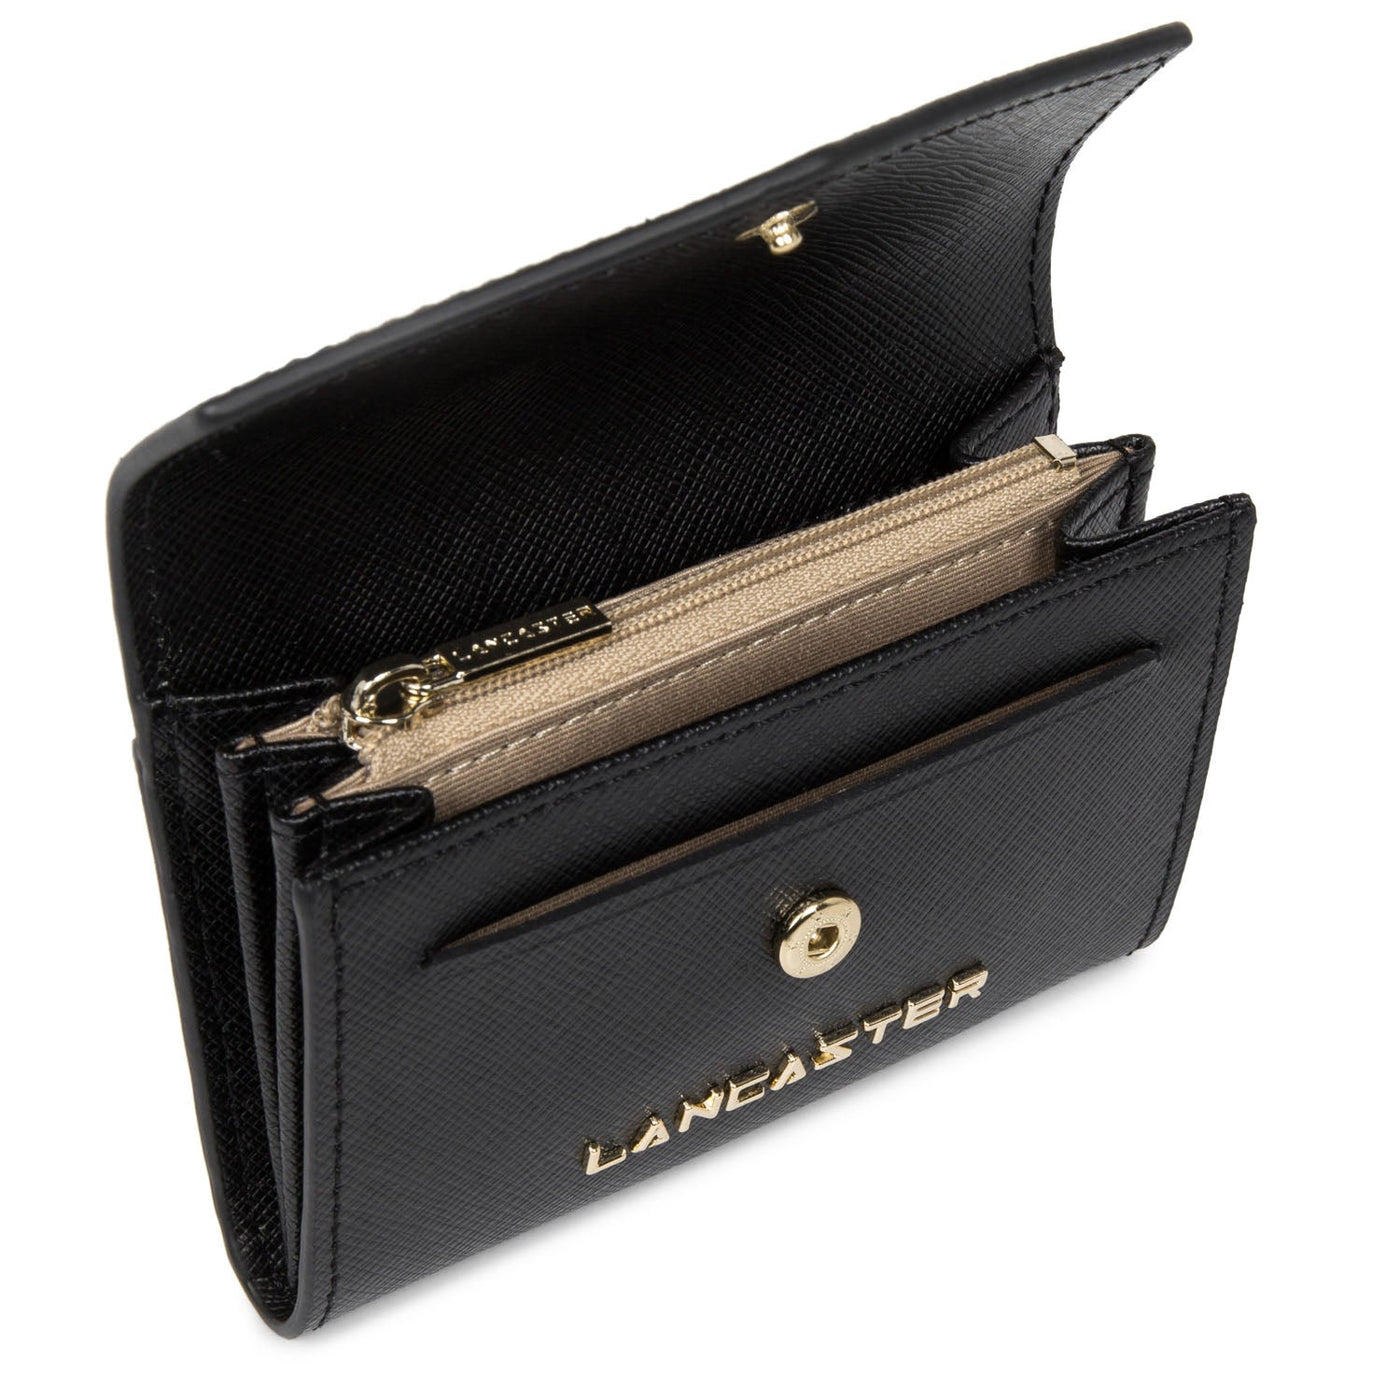 coin purse - saffiano signature #couleur_noir